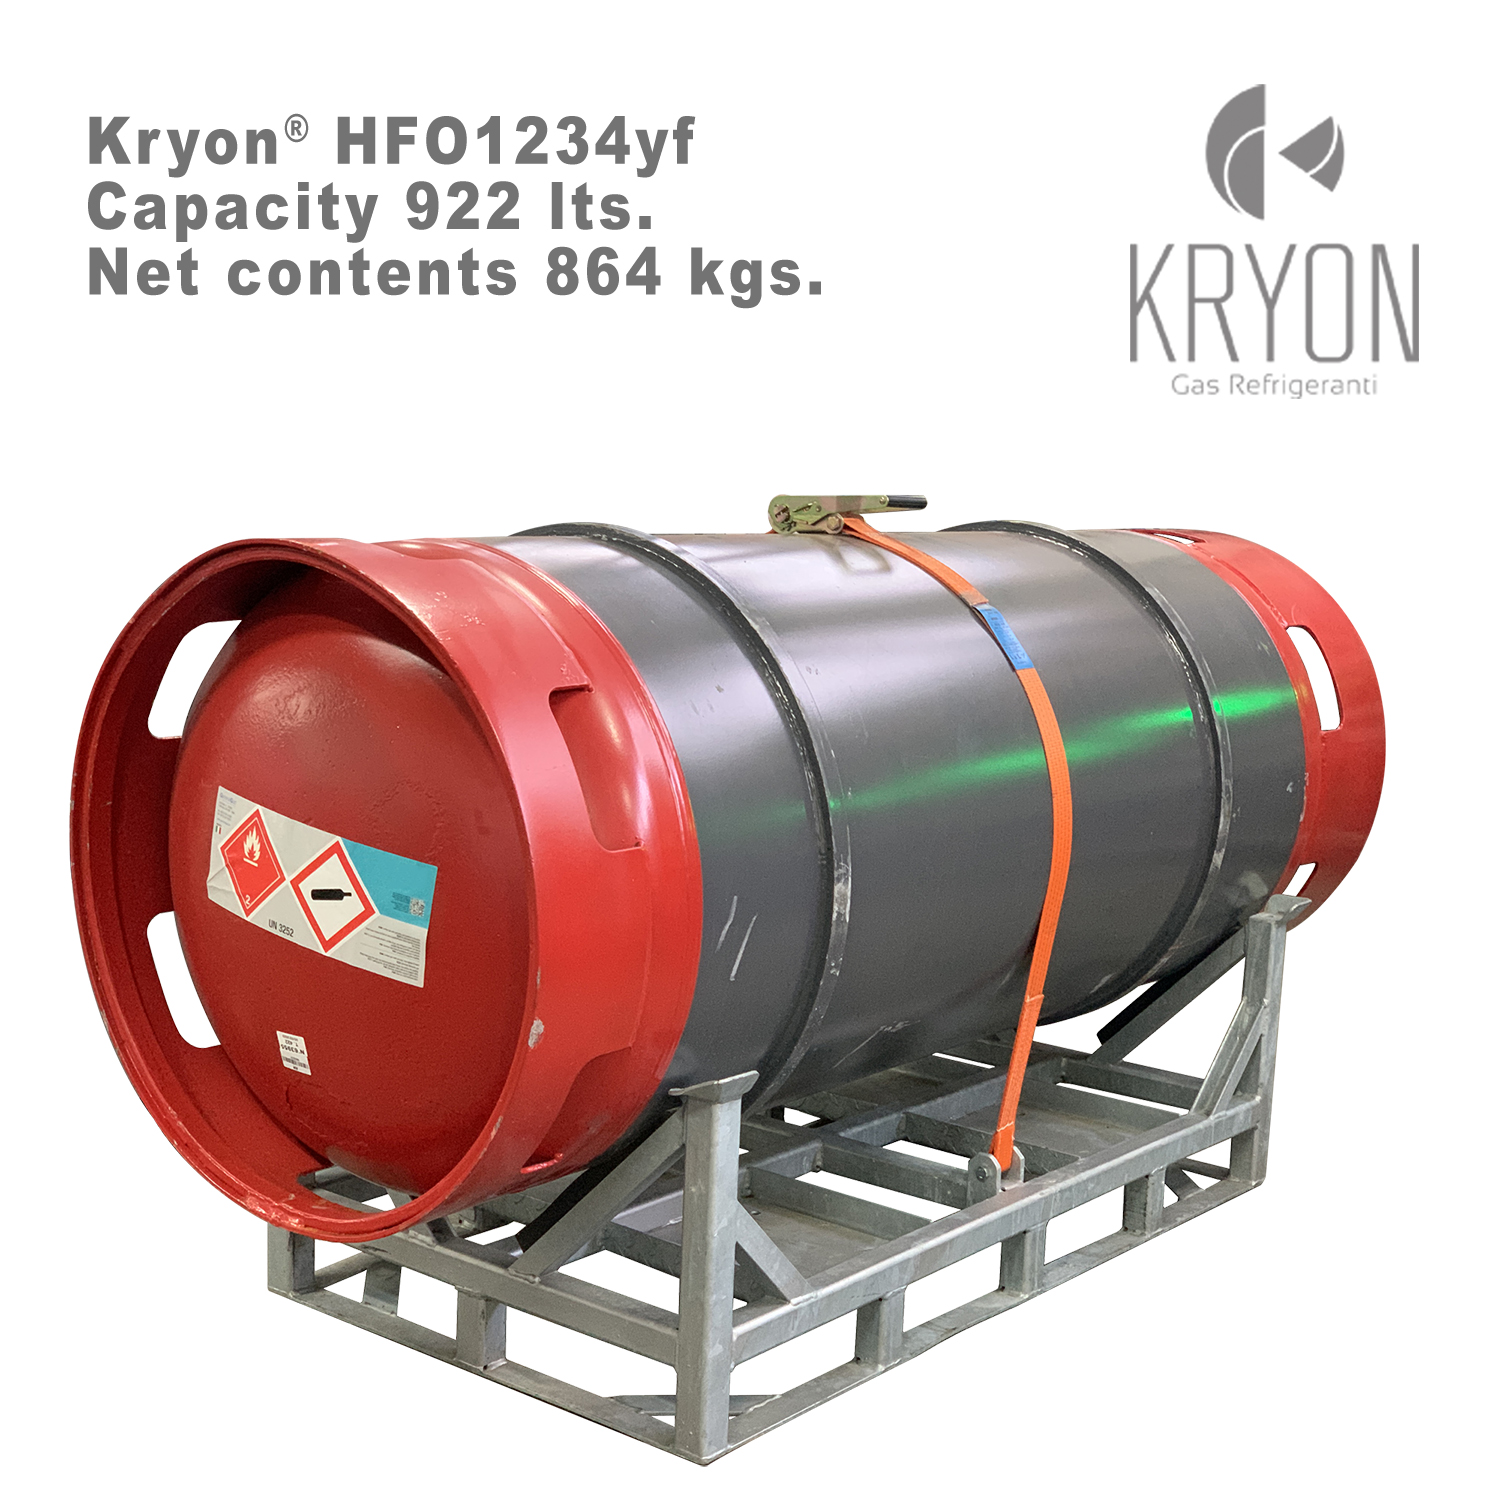 1234yf Kryon® HFO yf in Fusto a Rendere 920 litri - 864 Kg - T-PED